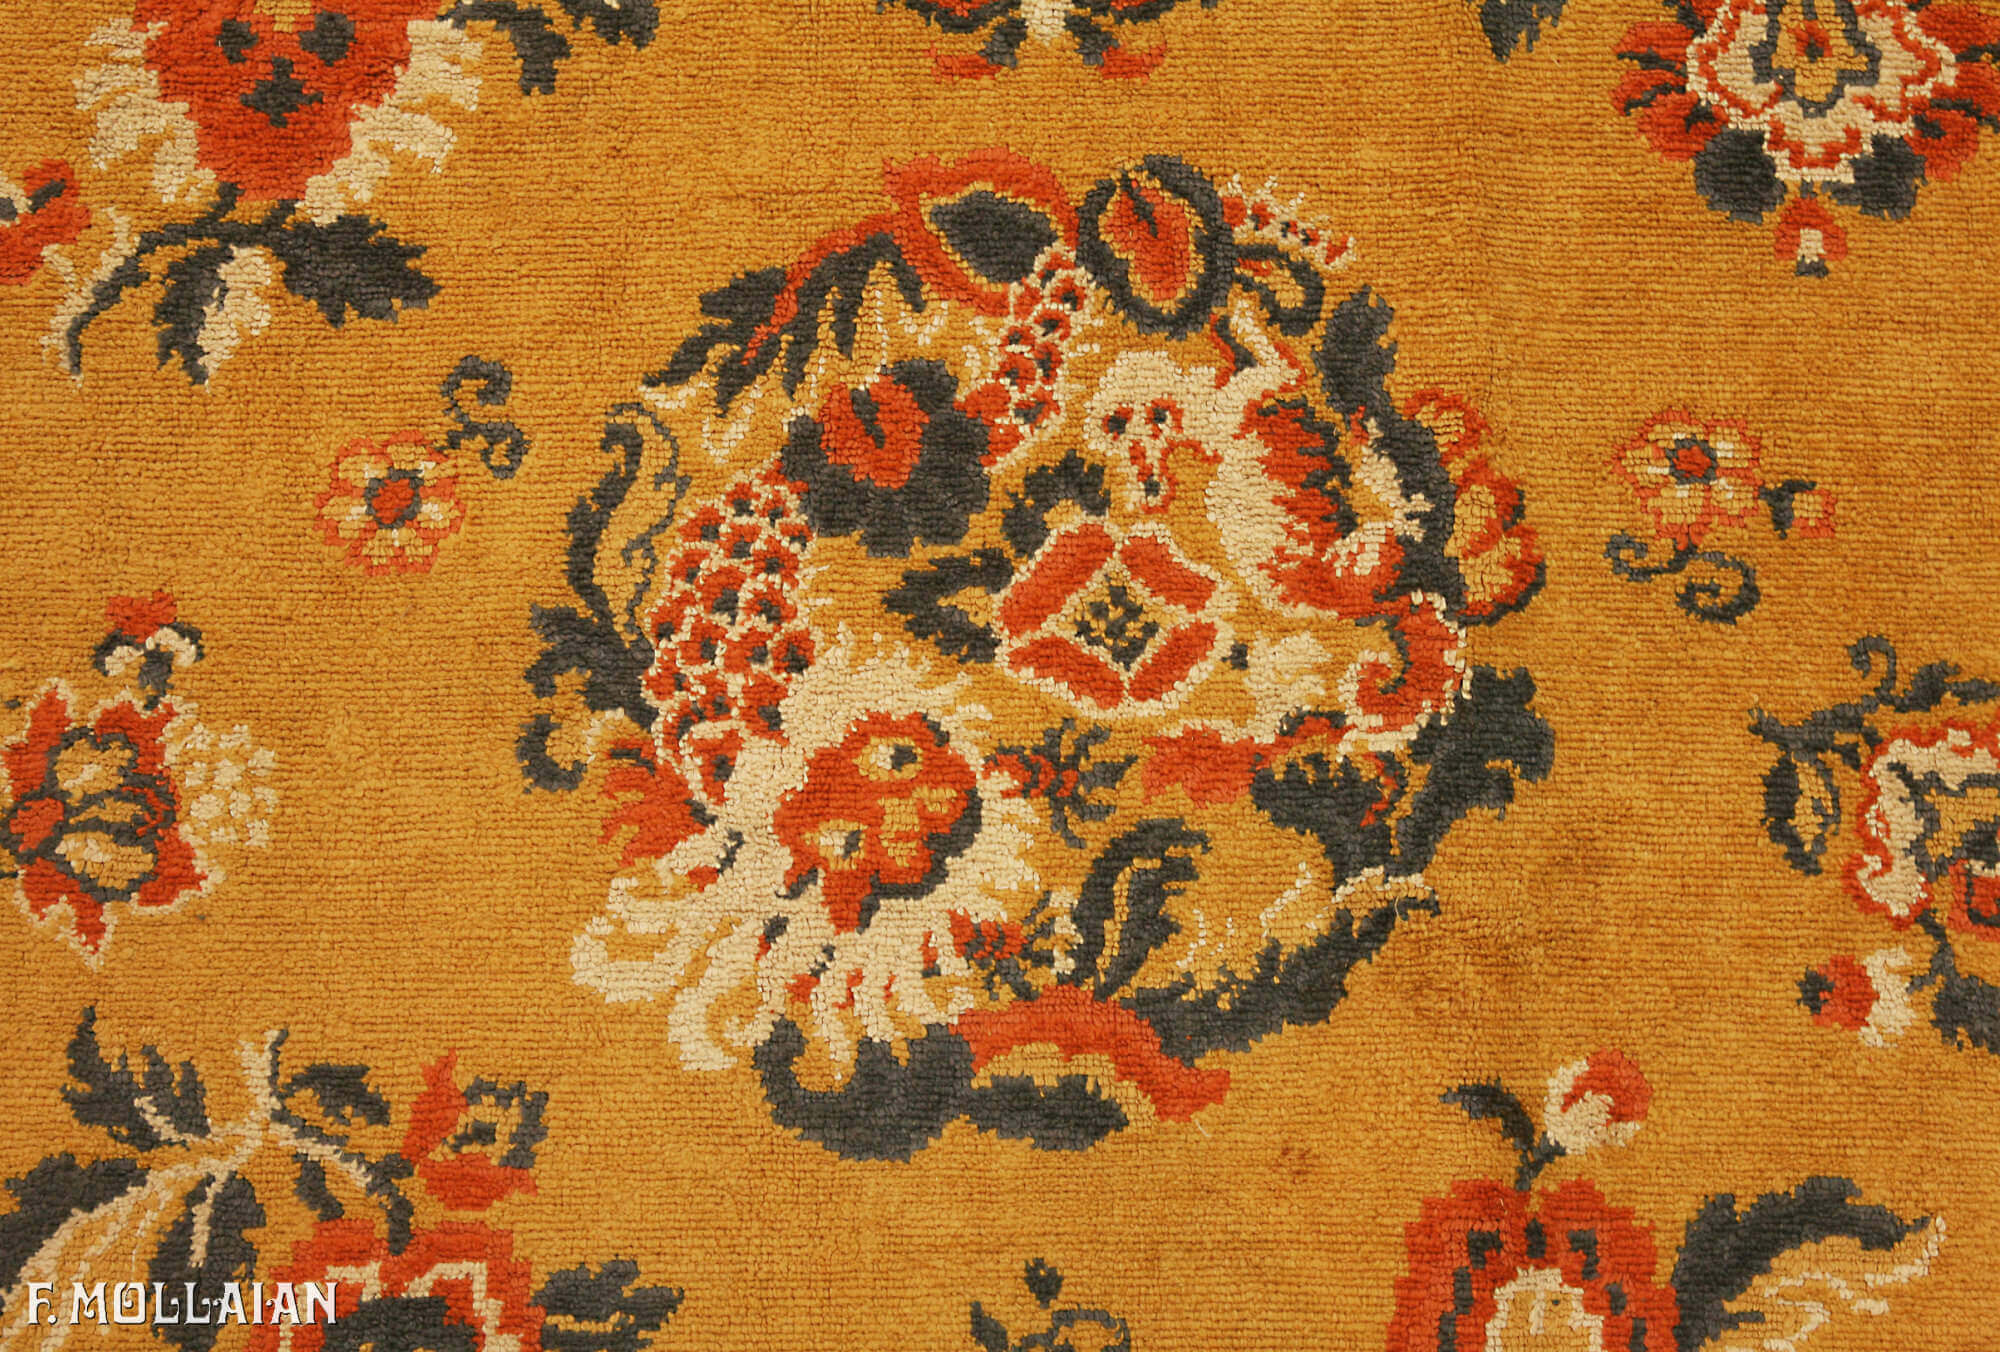 China Antigua Textil Velvet n°:69051685